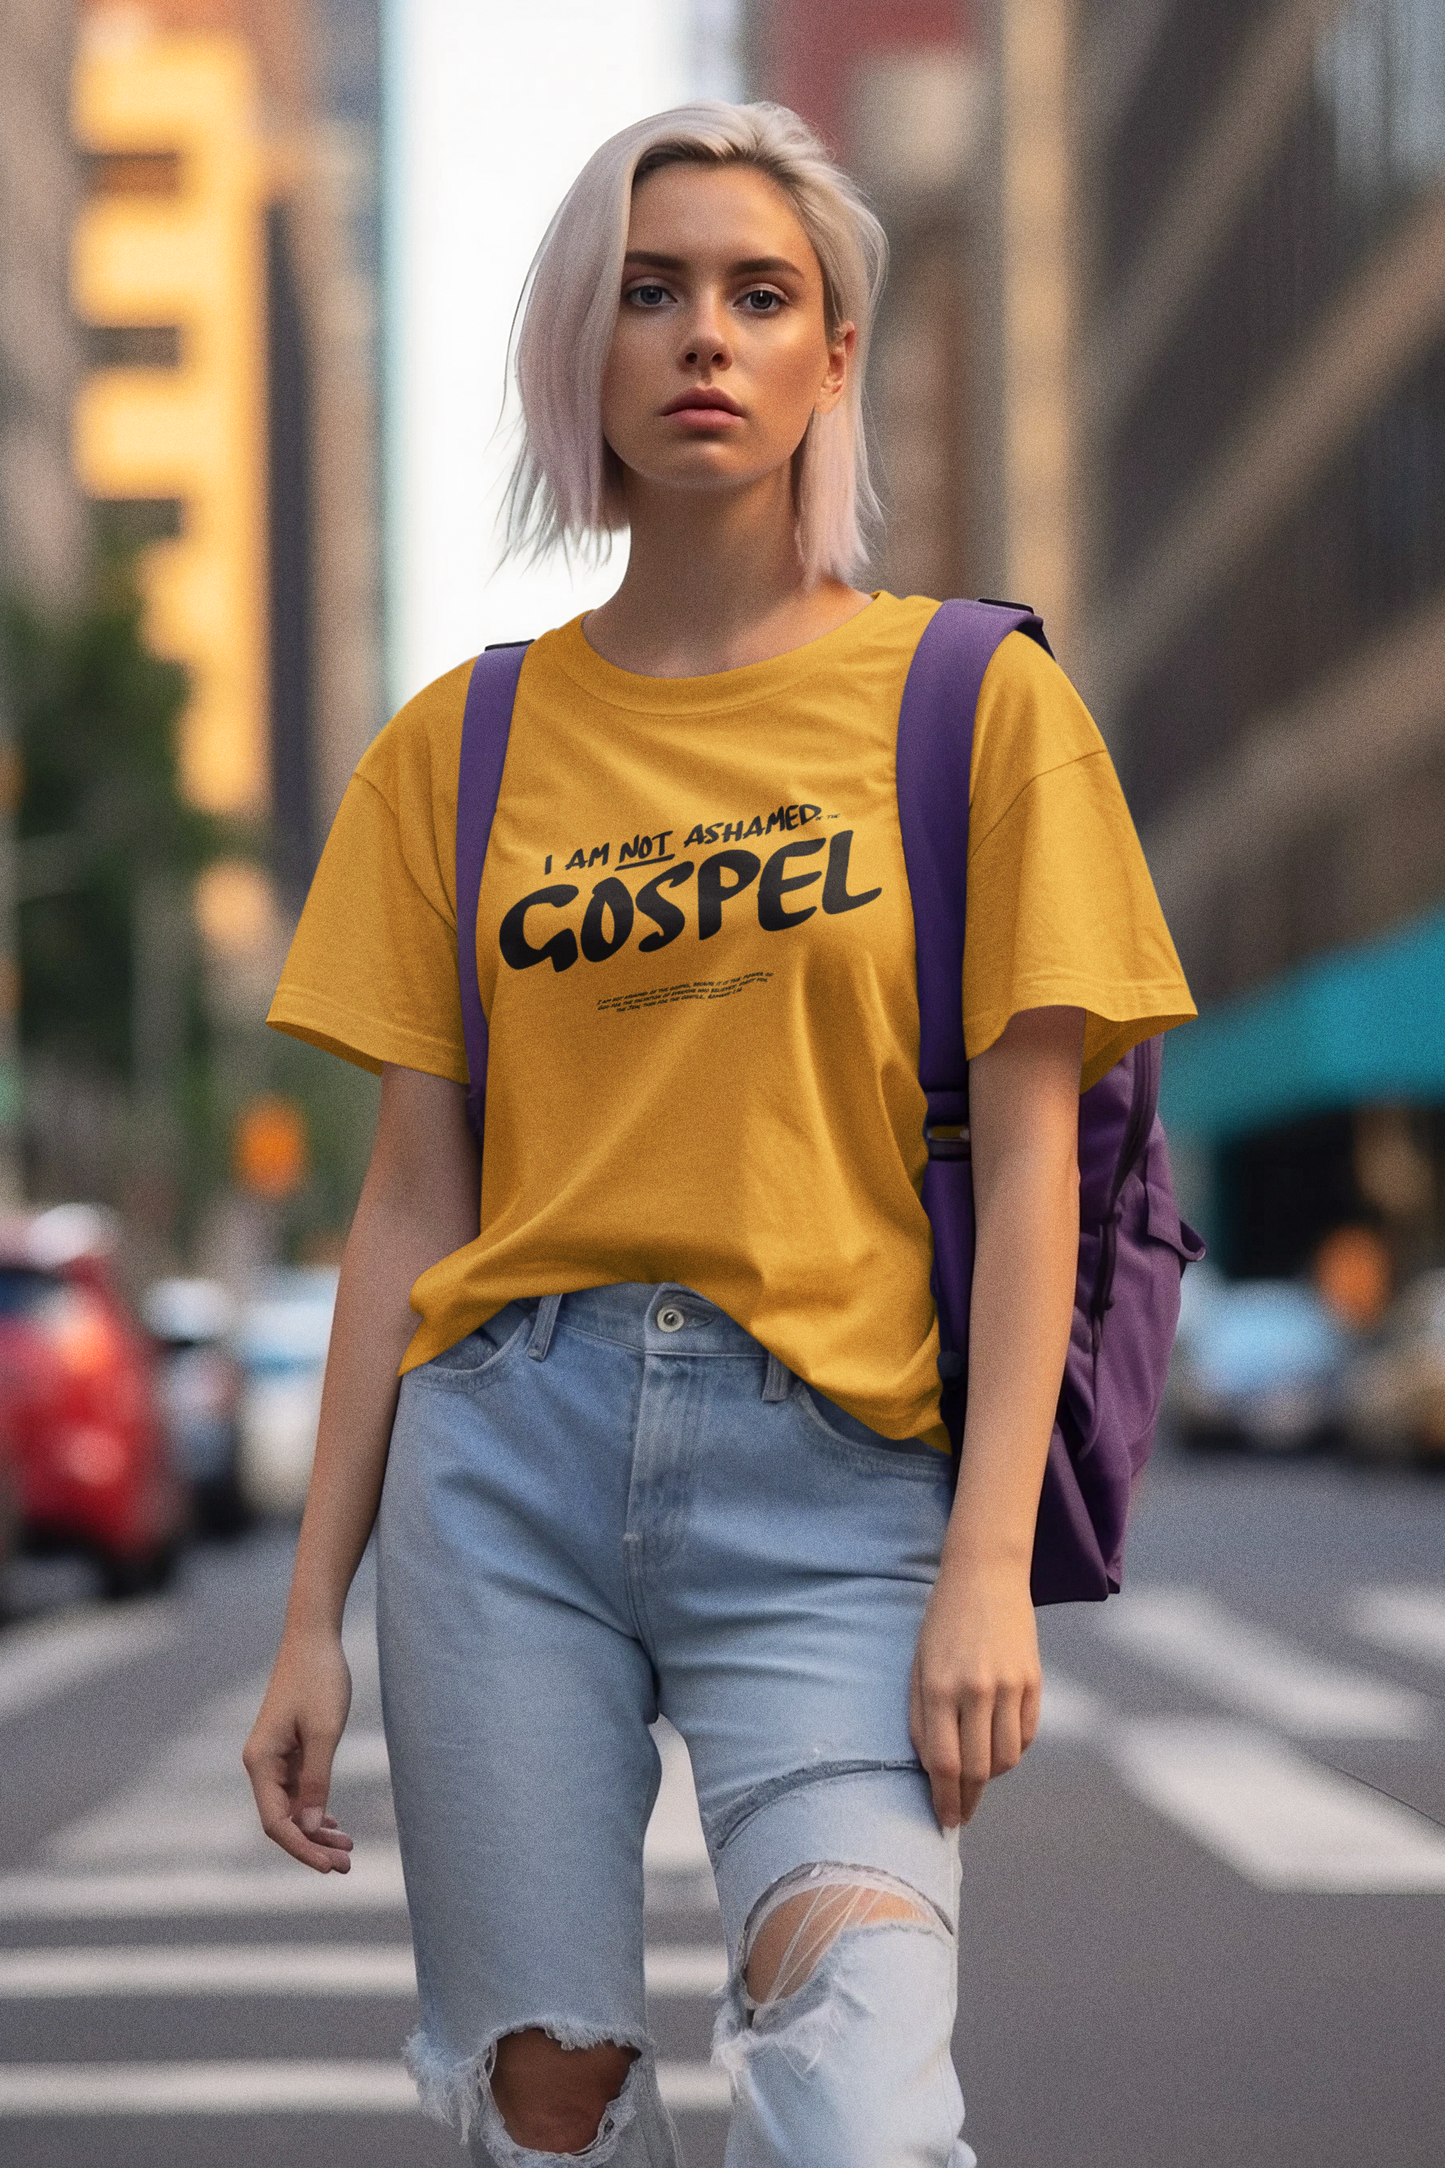 I am not ashamed of the Gospel. Tee.